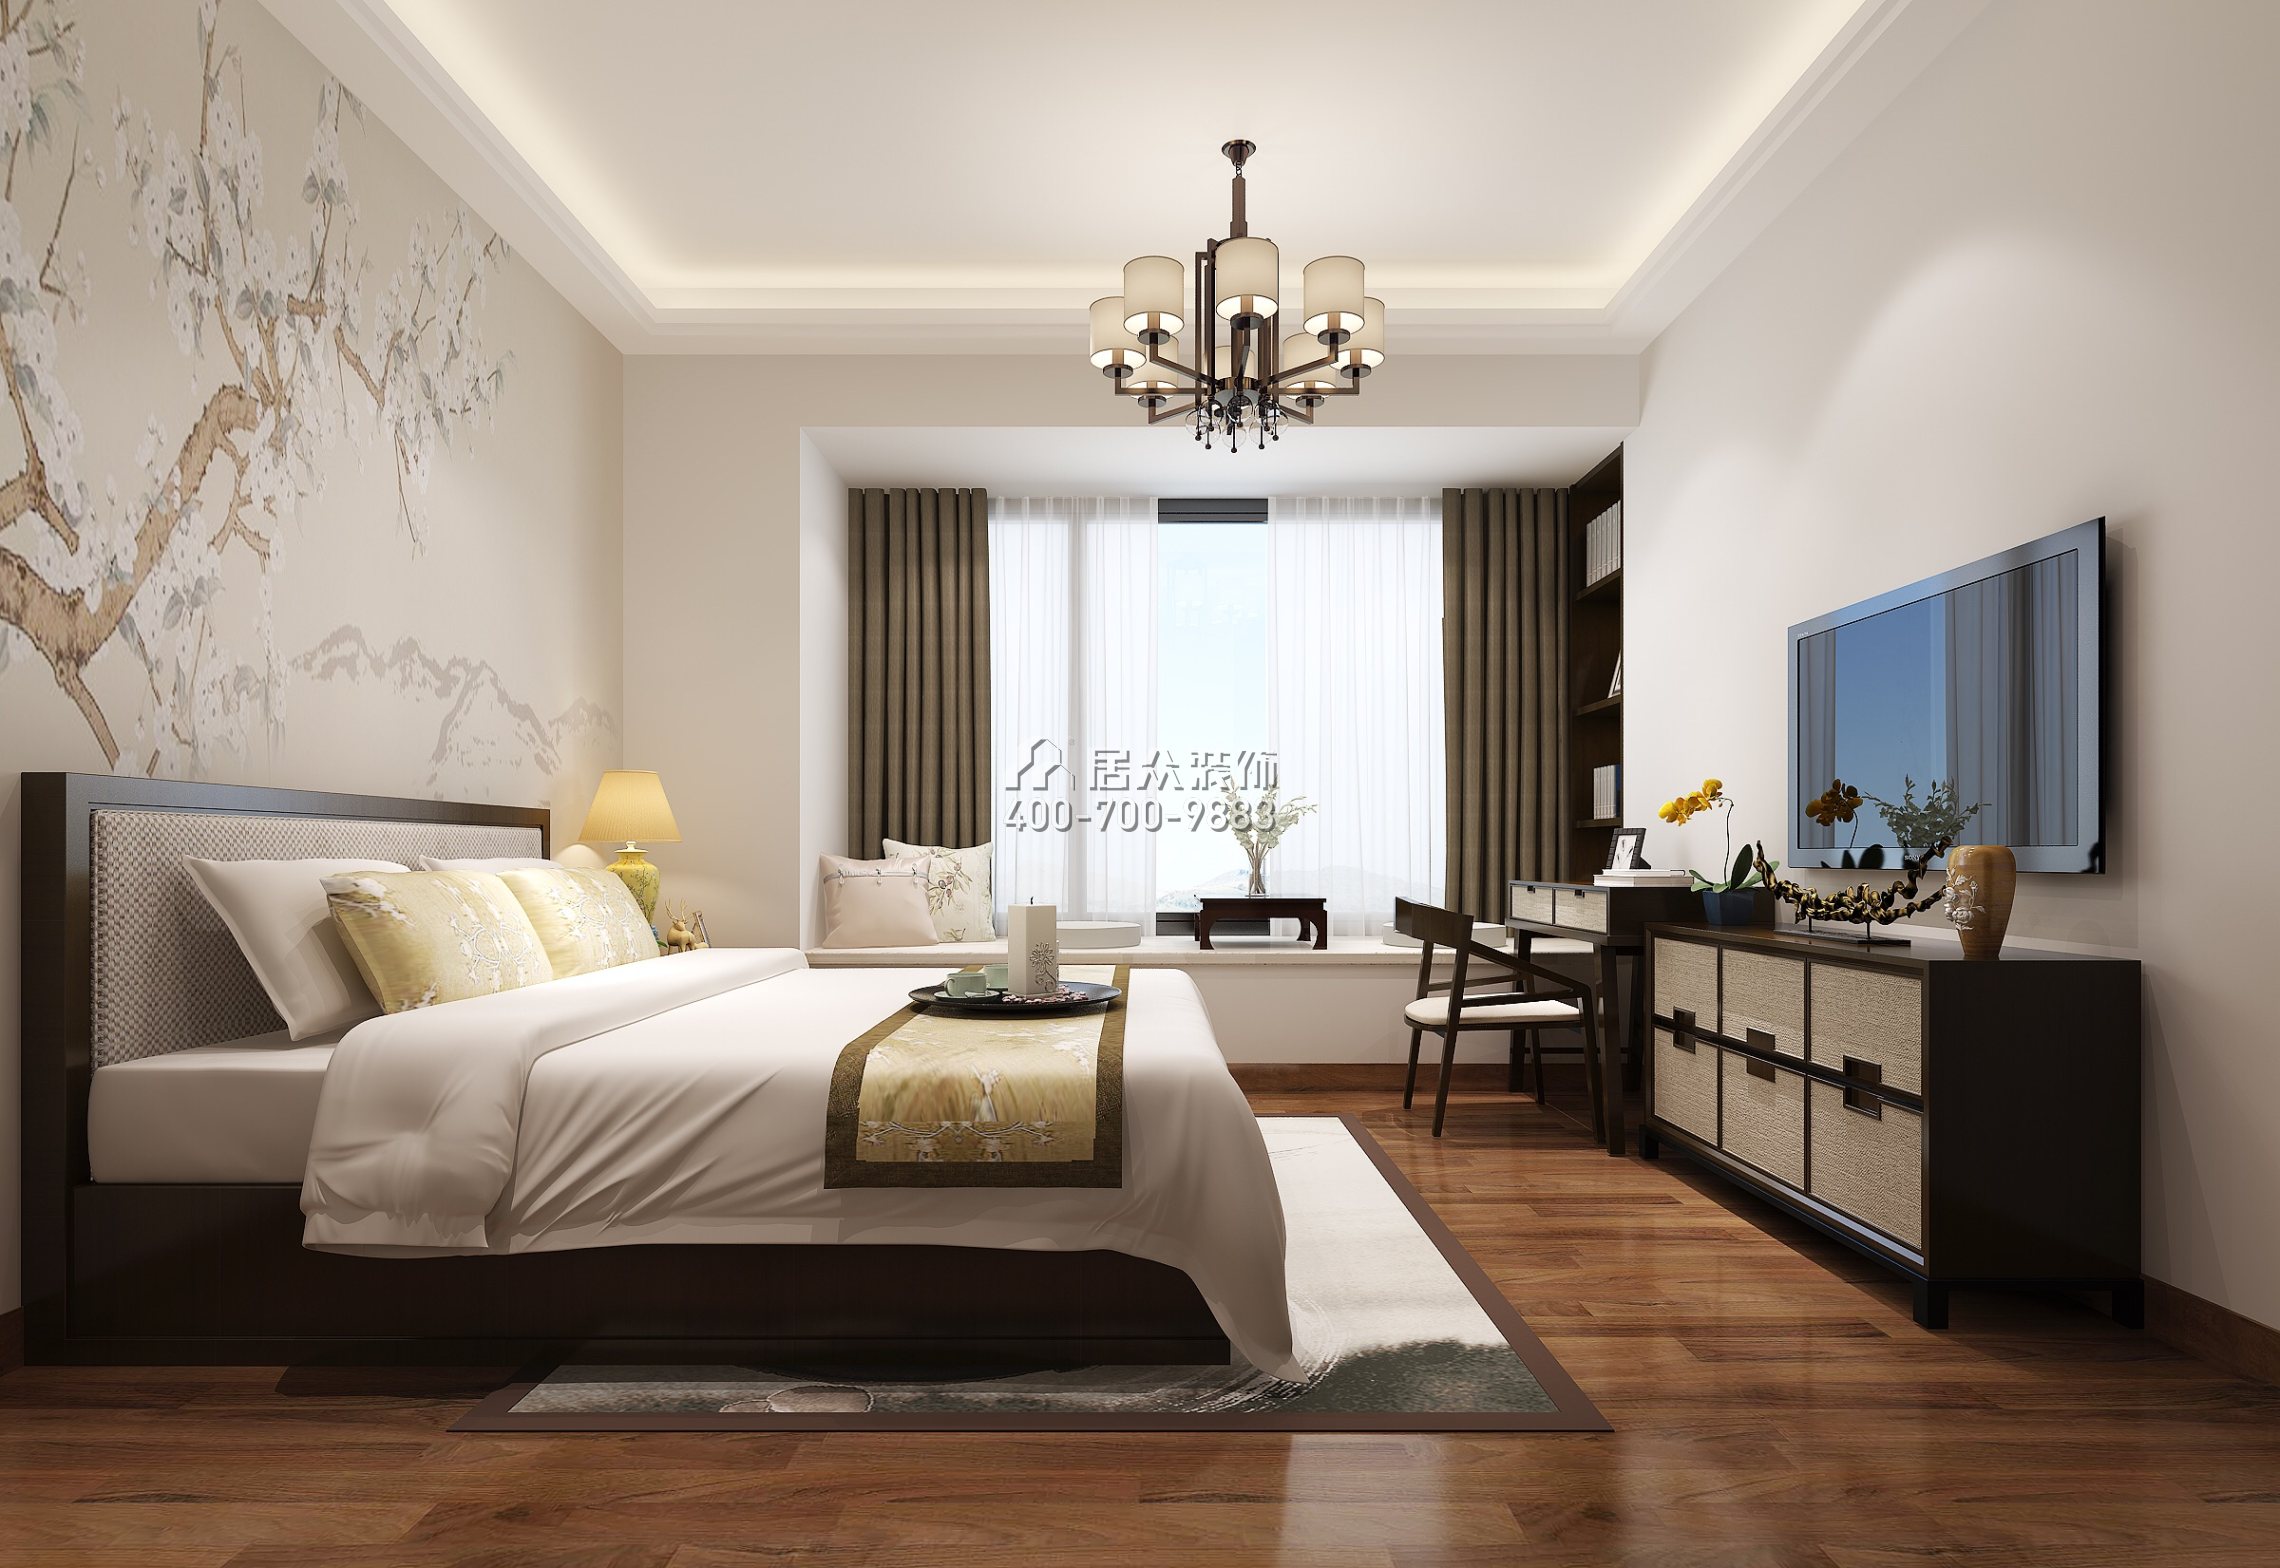 珊瑚天峰200平方米中式风格复式户型卧室装修效果图